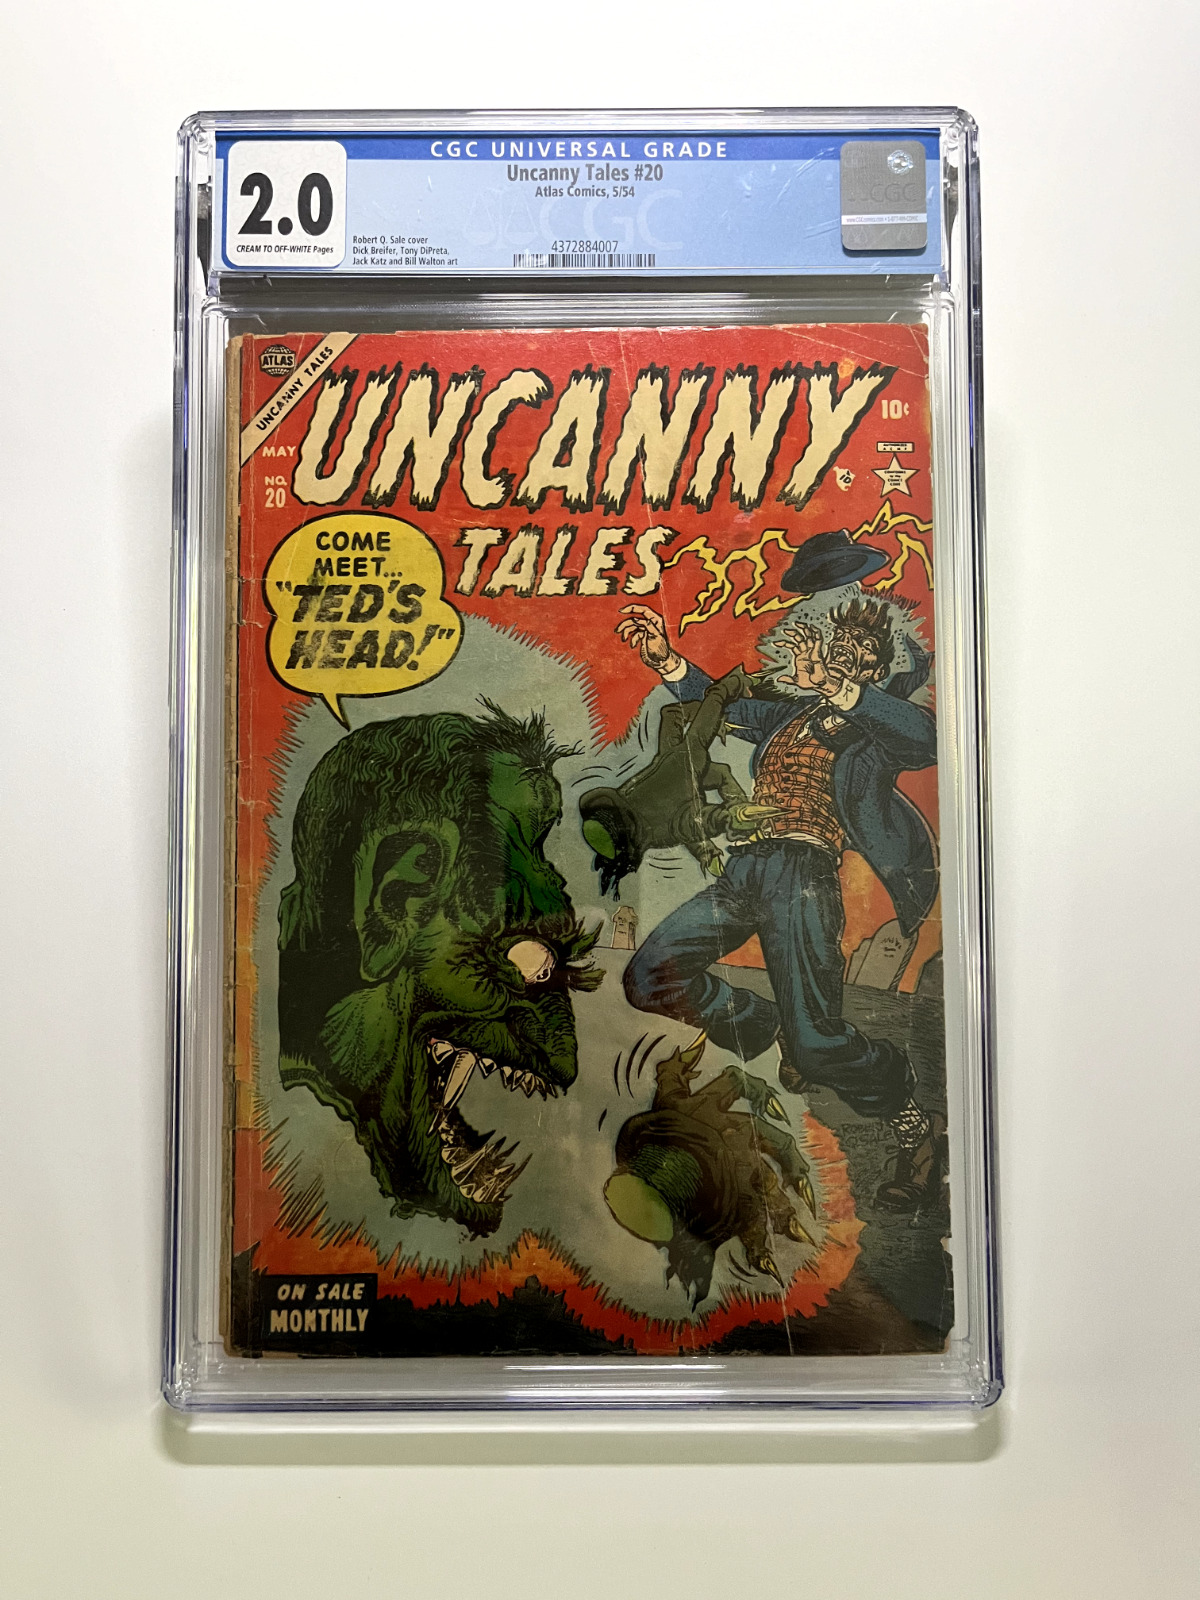 Uncanny Tales #20 CGC 2.0 (1954 Pre-Code Horror Atlas Comics) Rob Q Sale Cover